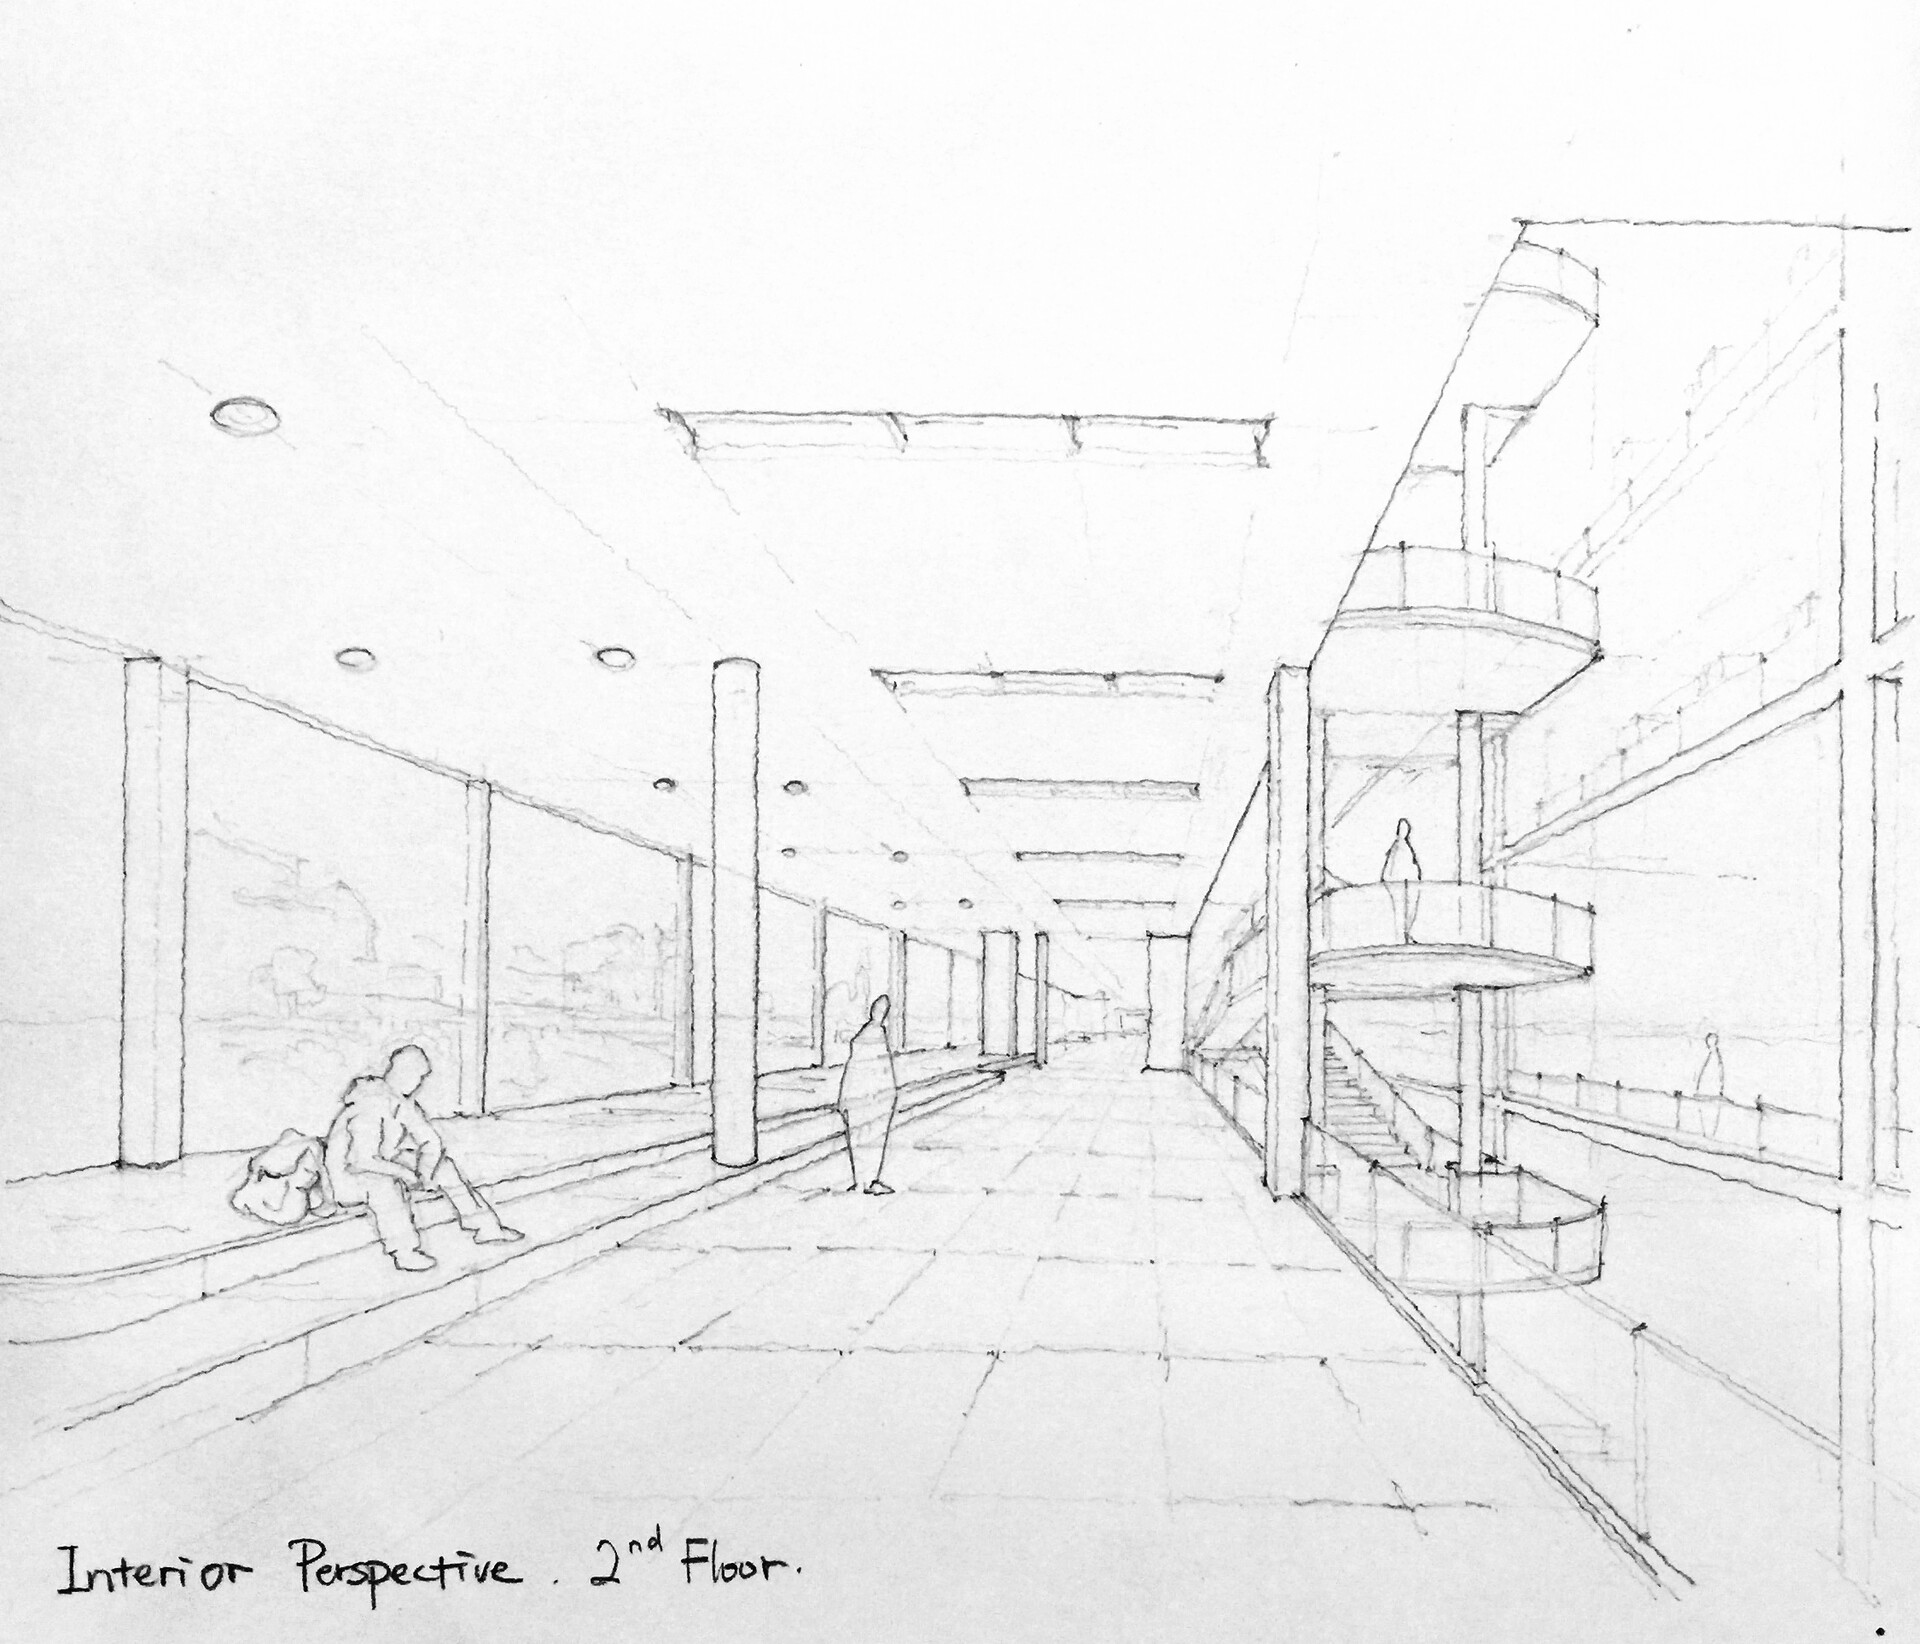 dian gu 11 sketch interior perspective